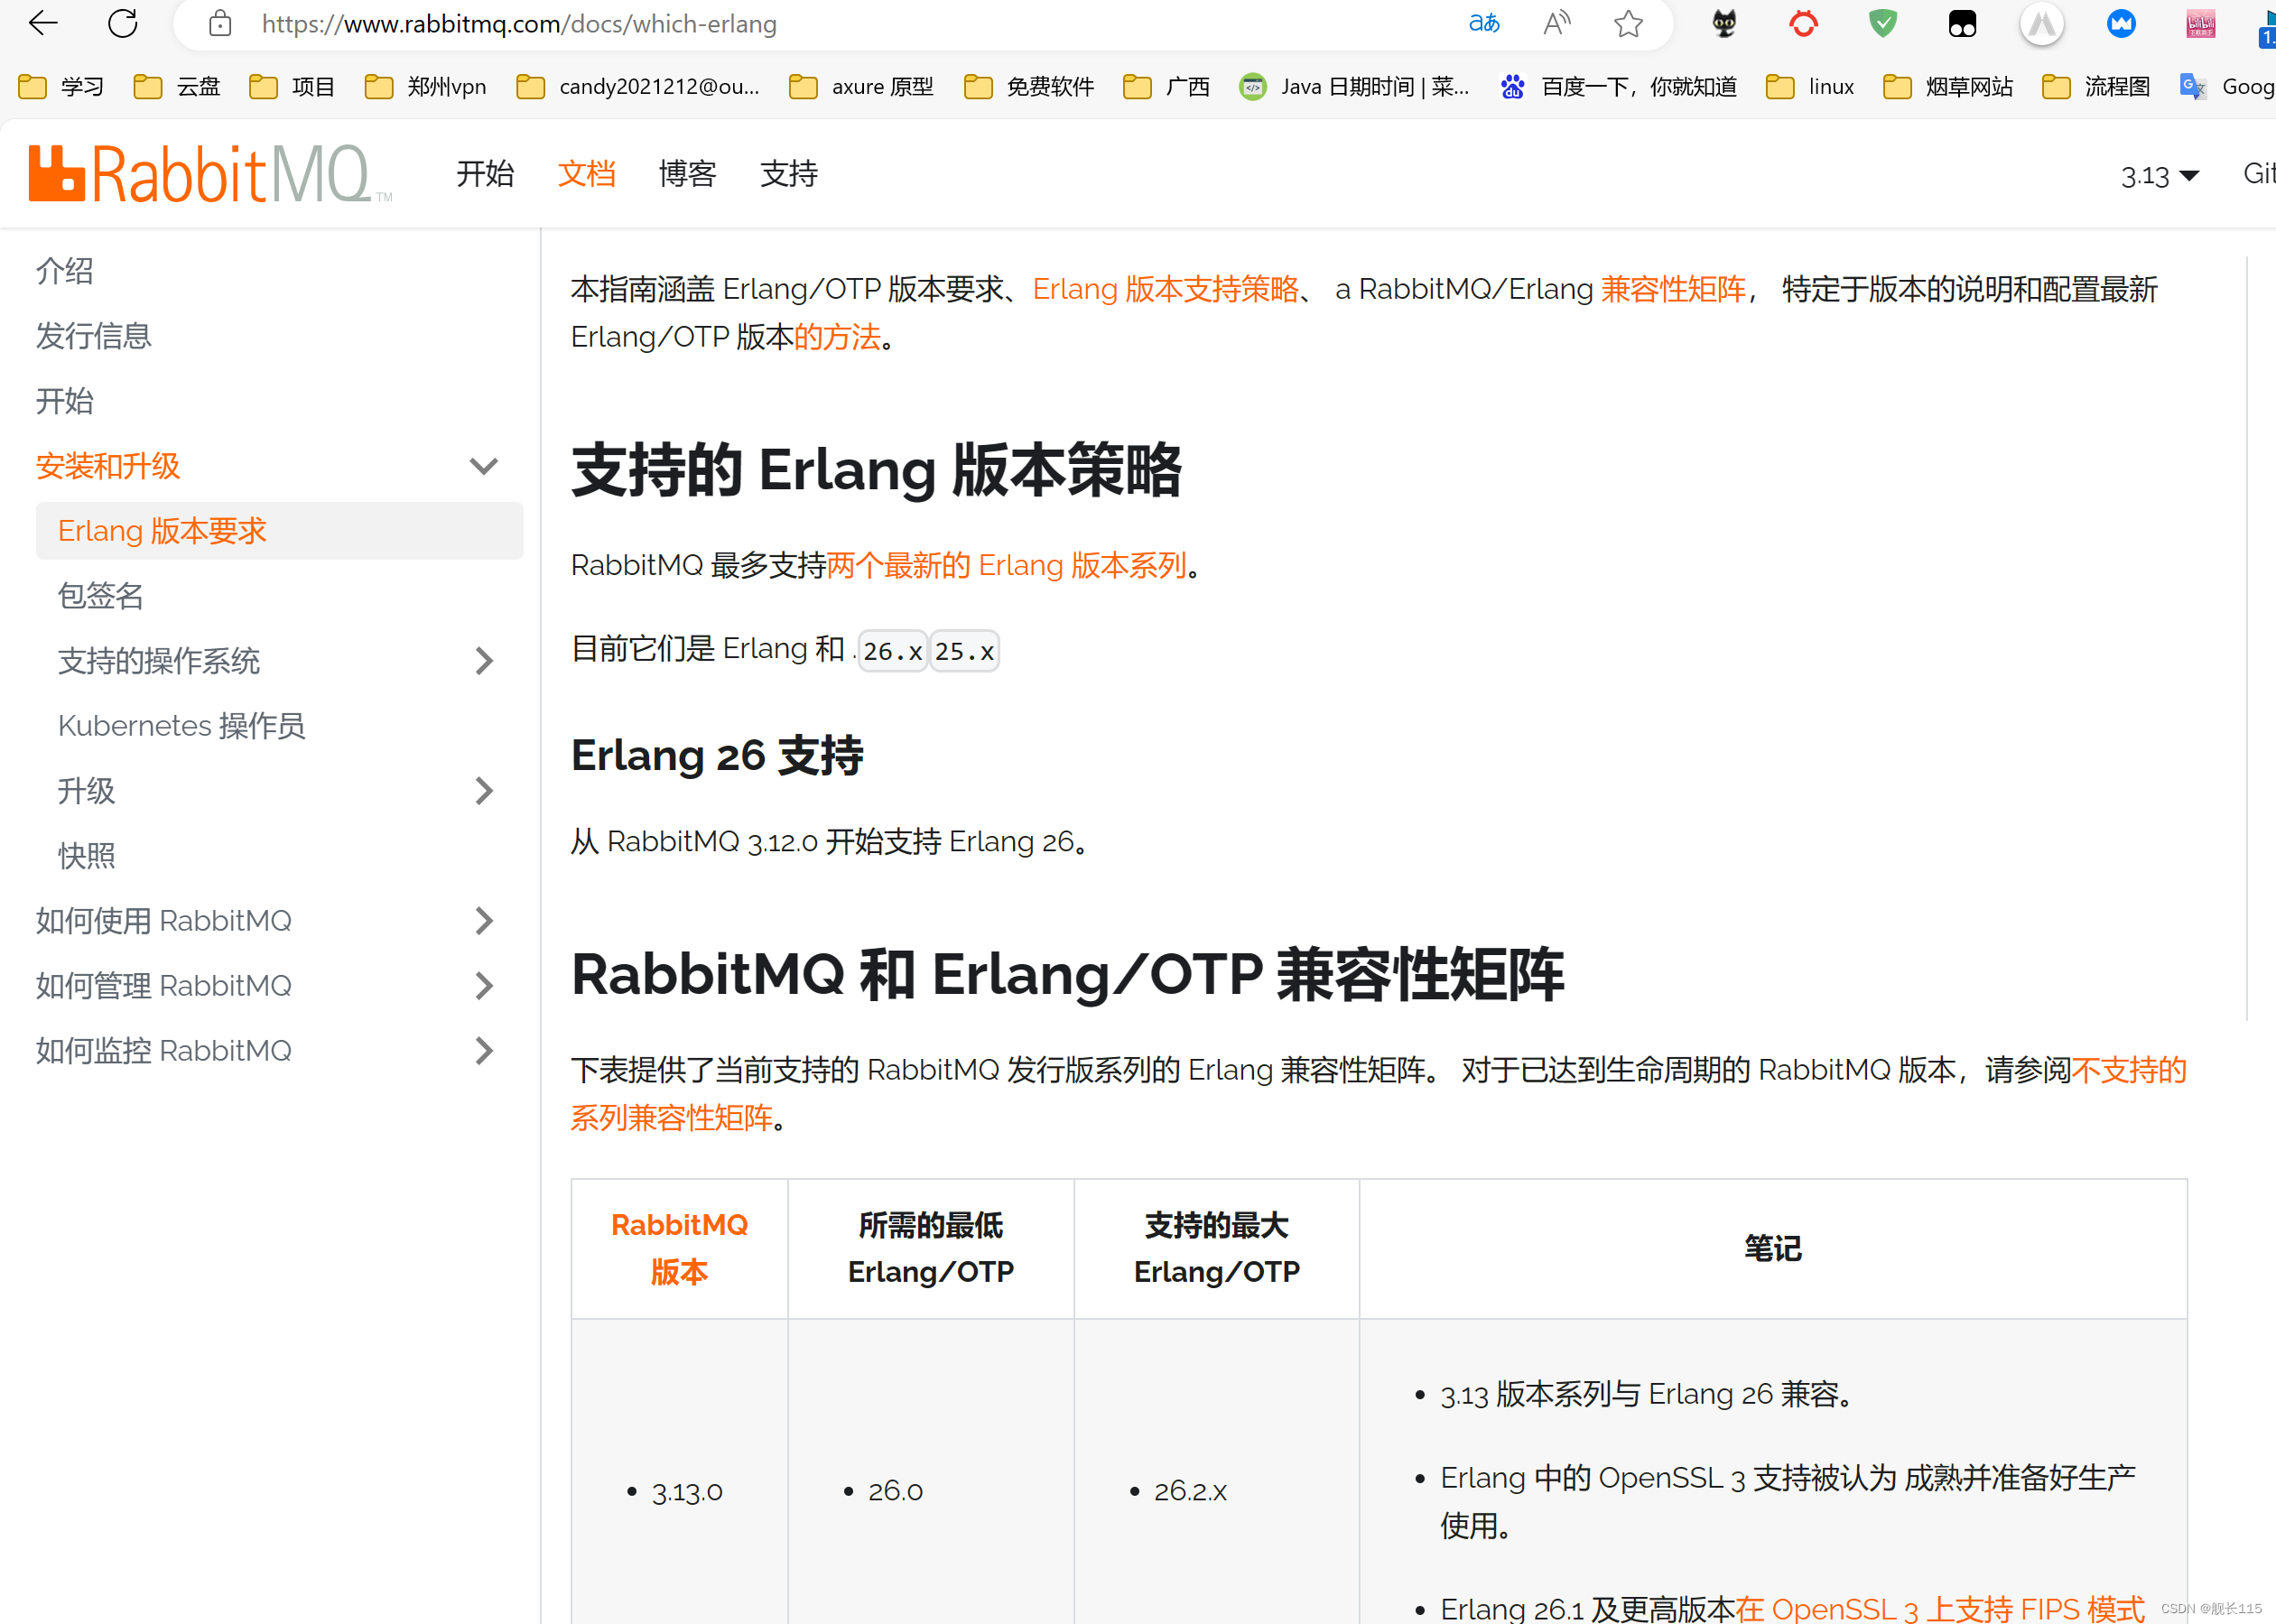 rabbitmq下载安装最新版本--并添加开机启动图文详解!!